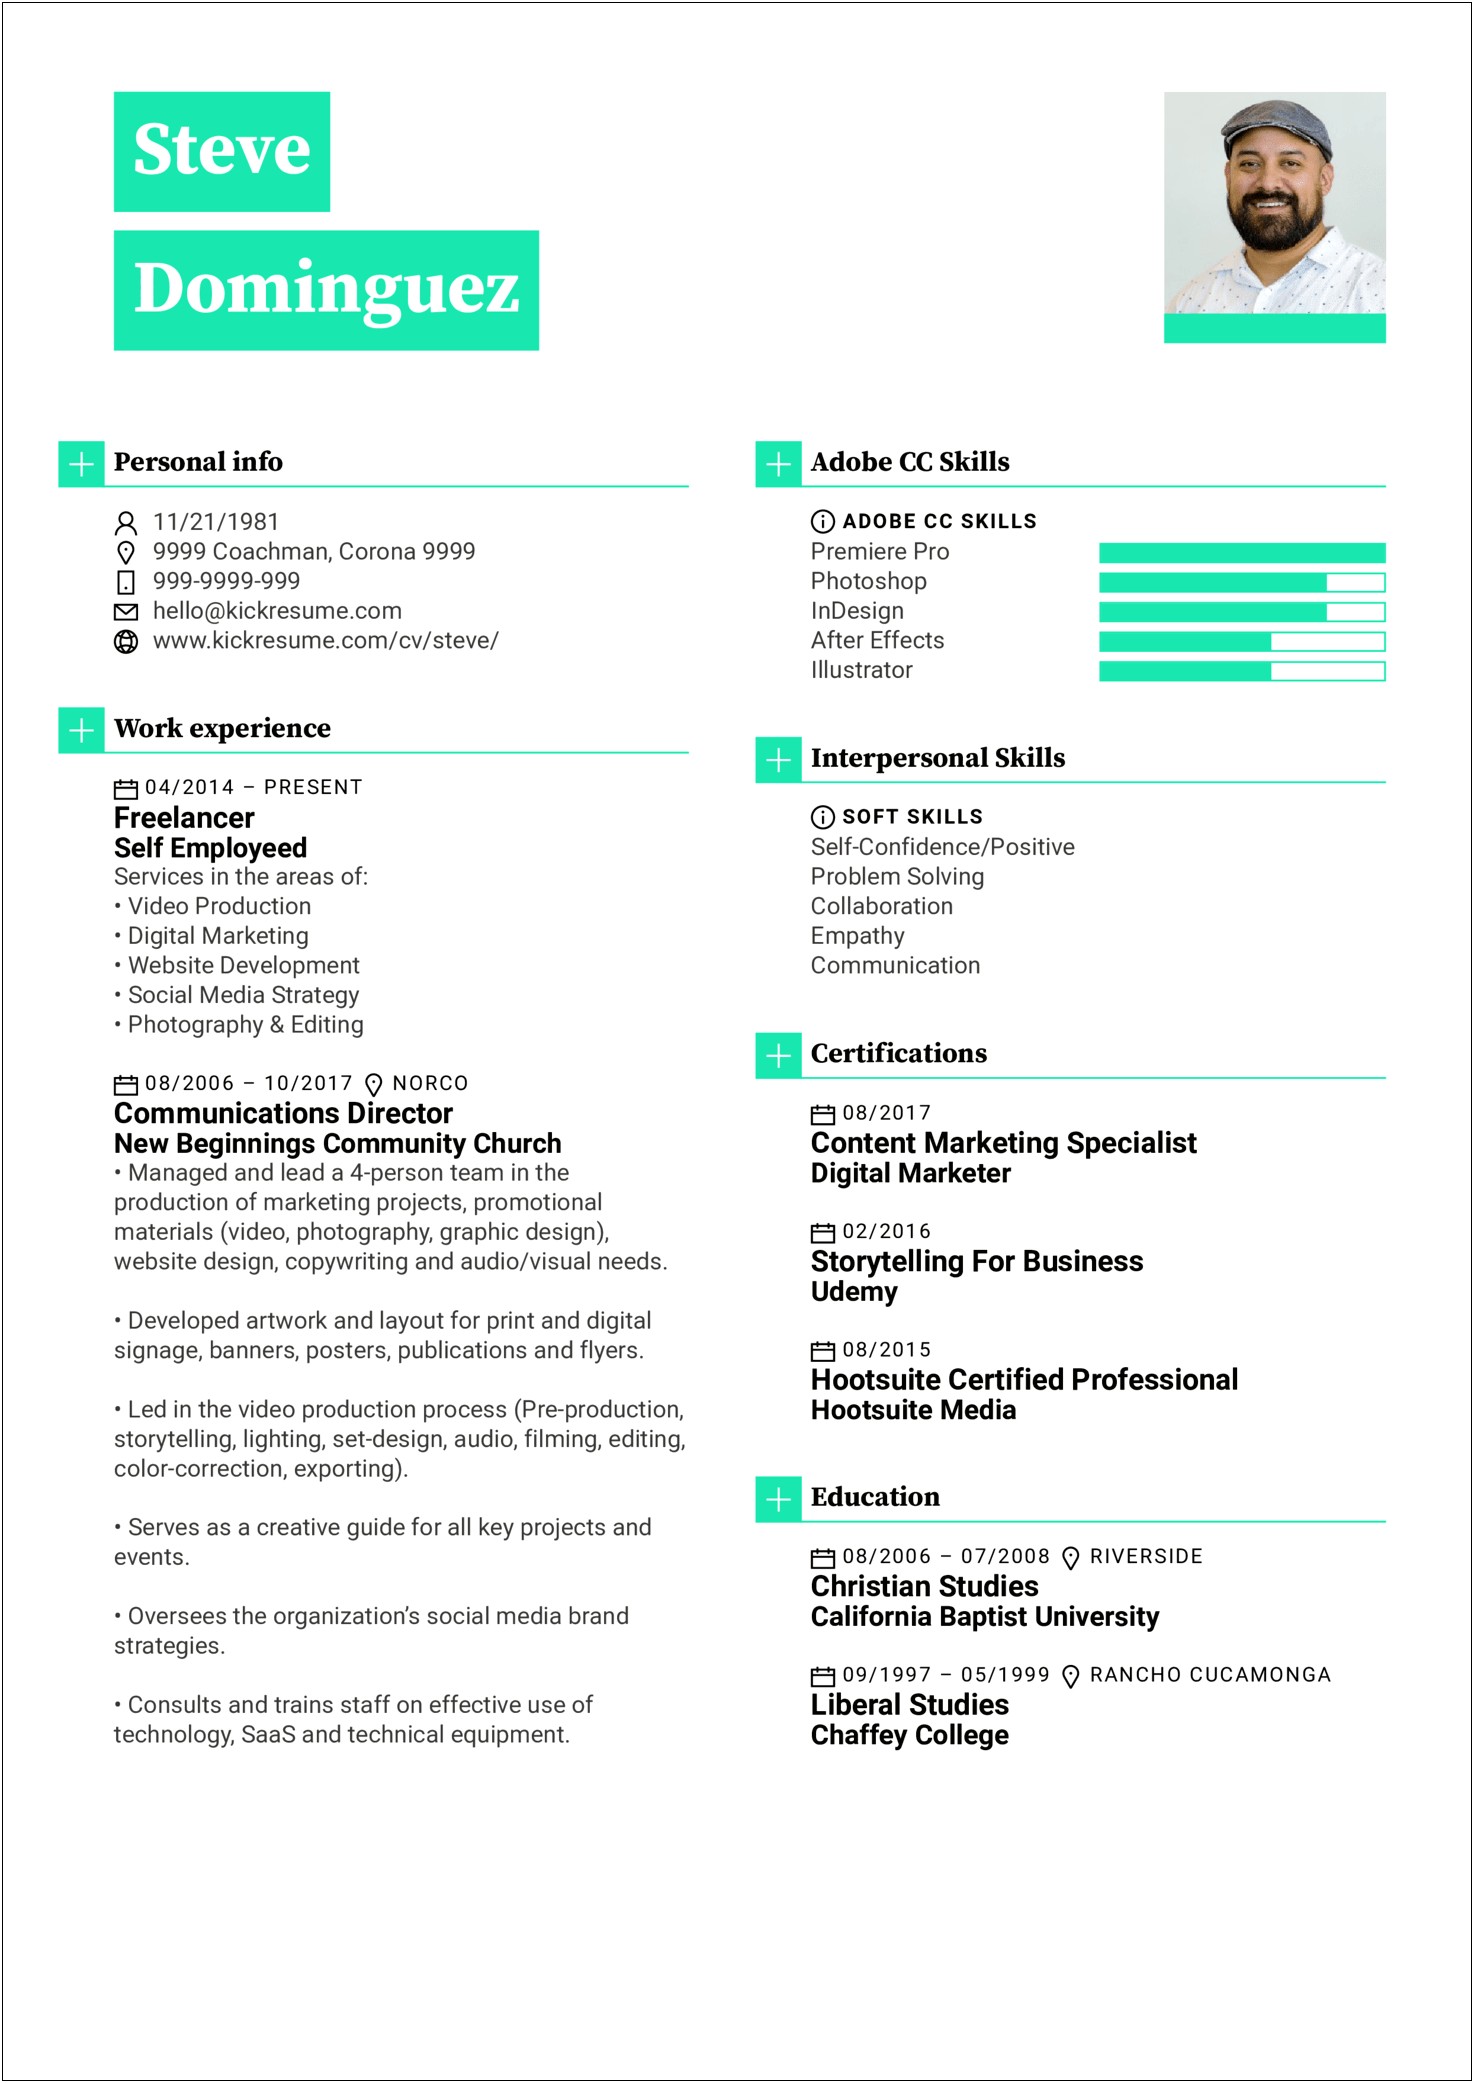 Resume Bio Examples For Graphic Designer